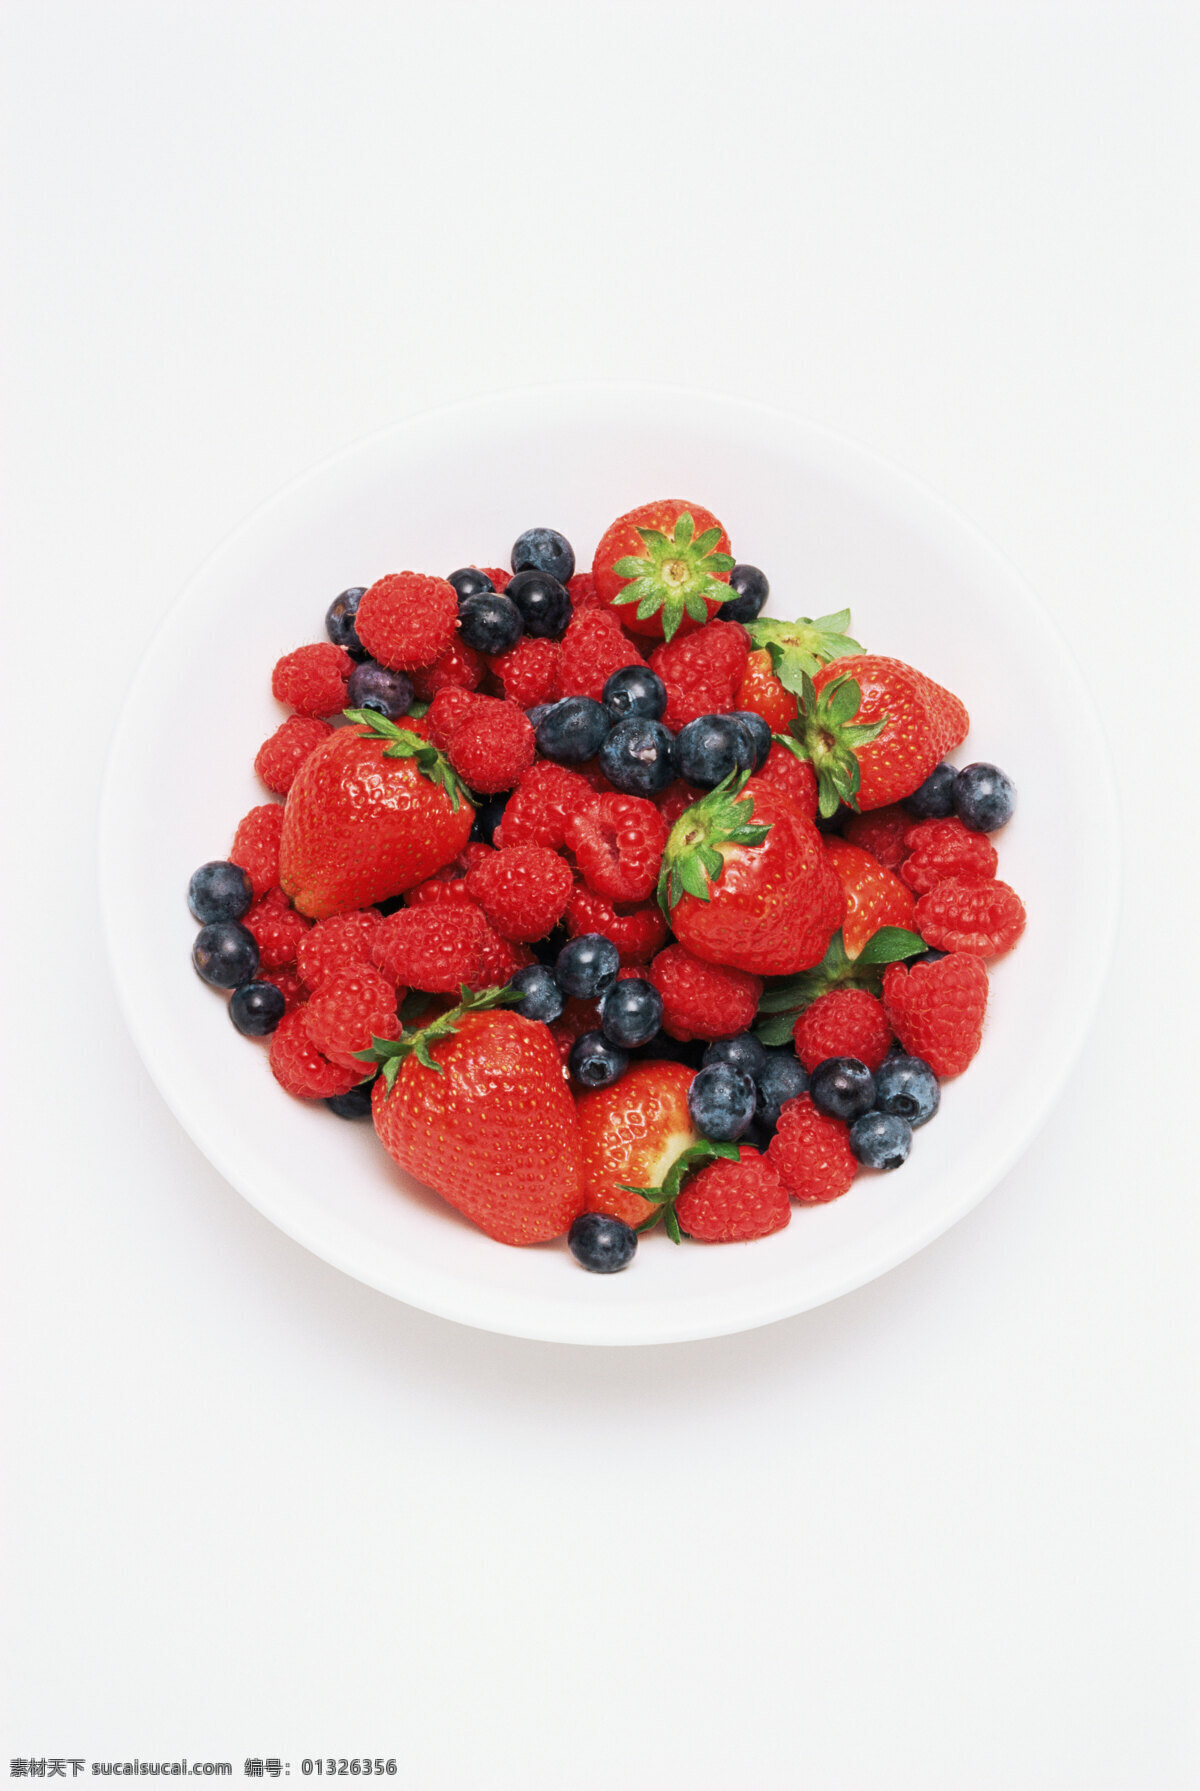 草莓 蓝莓 绿叶 生物世界 蔬菜 蔬菜水果 水果 山莓 野果 浆果 草莓特写 水果主题 新鲜草莓 水果高清图片 好看的水果 风景 生活 旅游餐饮